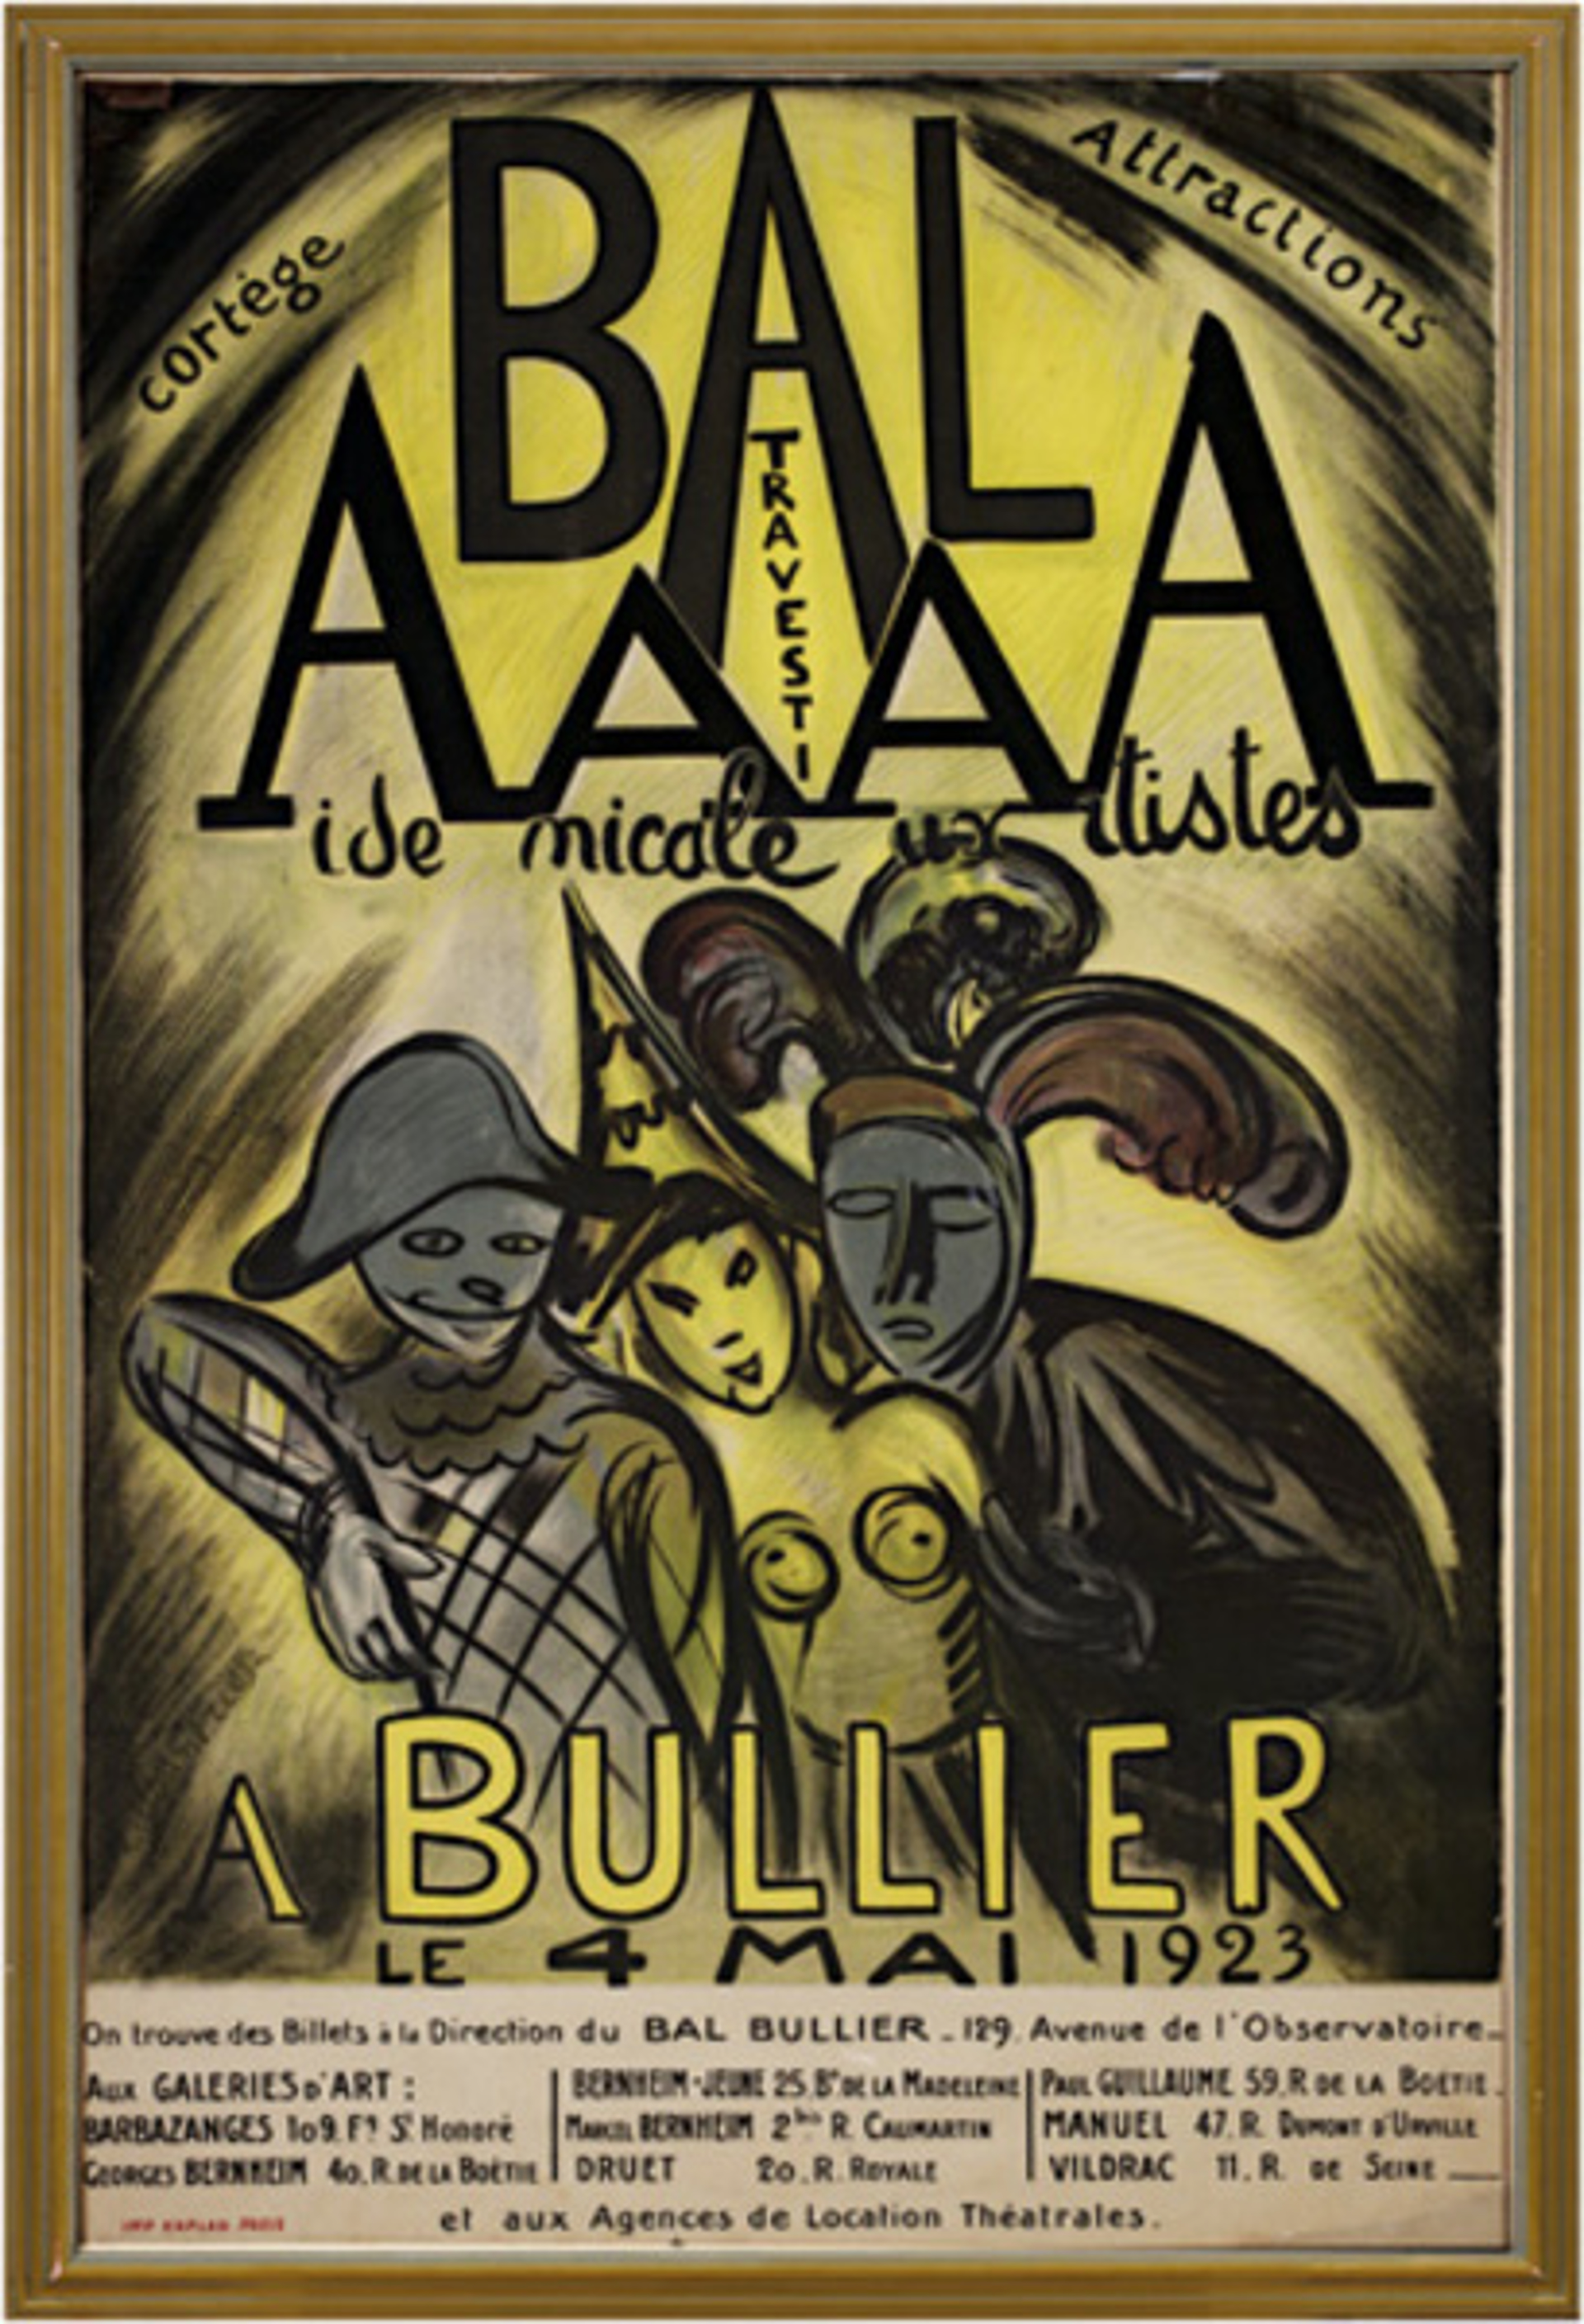 Bal AAAA Bullier by Achille-Emile-Othon Friesz